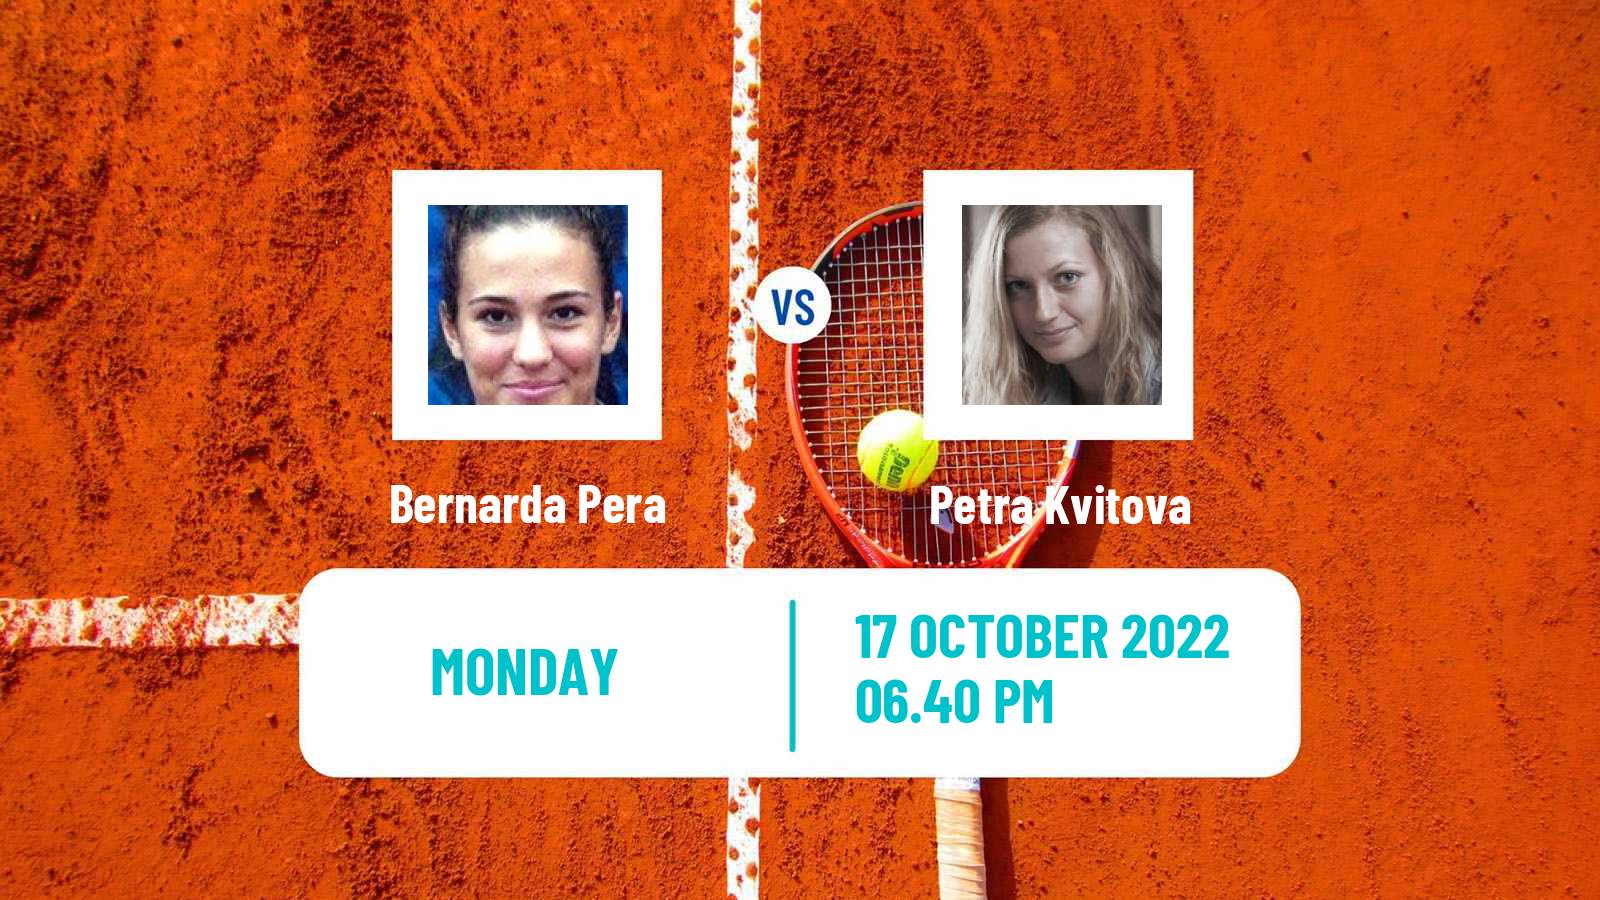 Tennis WTA Guadalajara 2 Bernarda Pera - Petra Kvitova